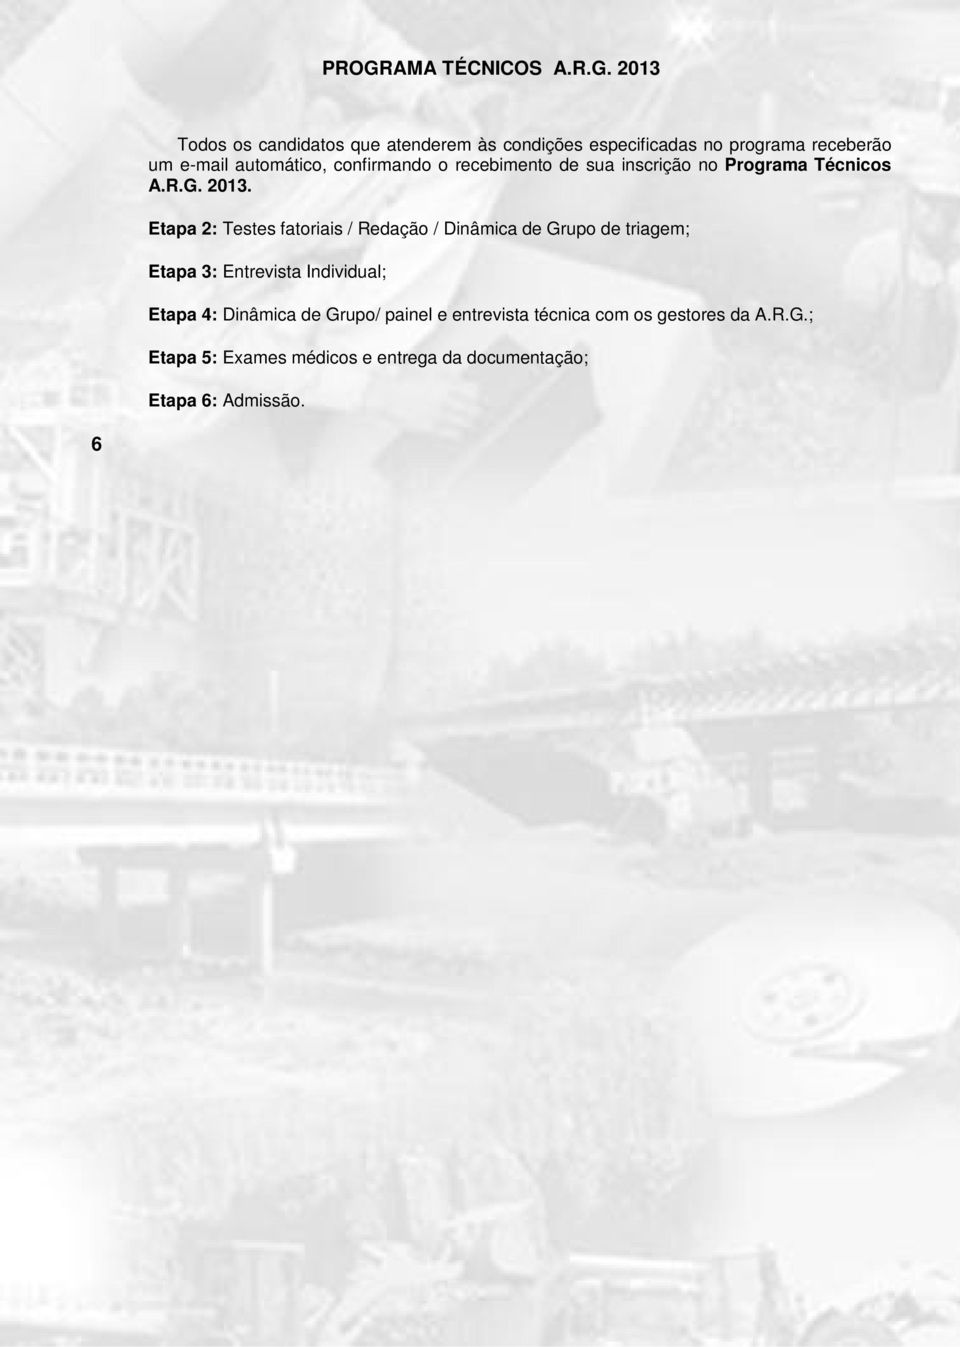 6 CRONOGRAMA PROCESSO SELETIVO PERÍODO/ DATA Etapa 1: Inscrições através do site: www.grupoarg.com.